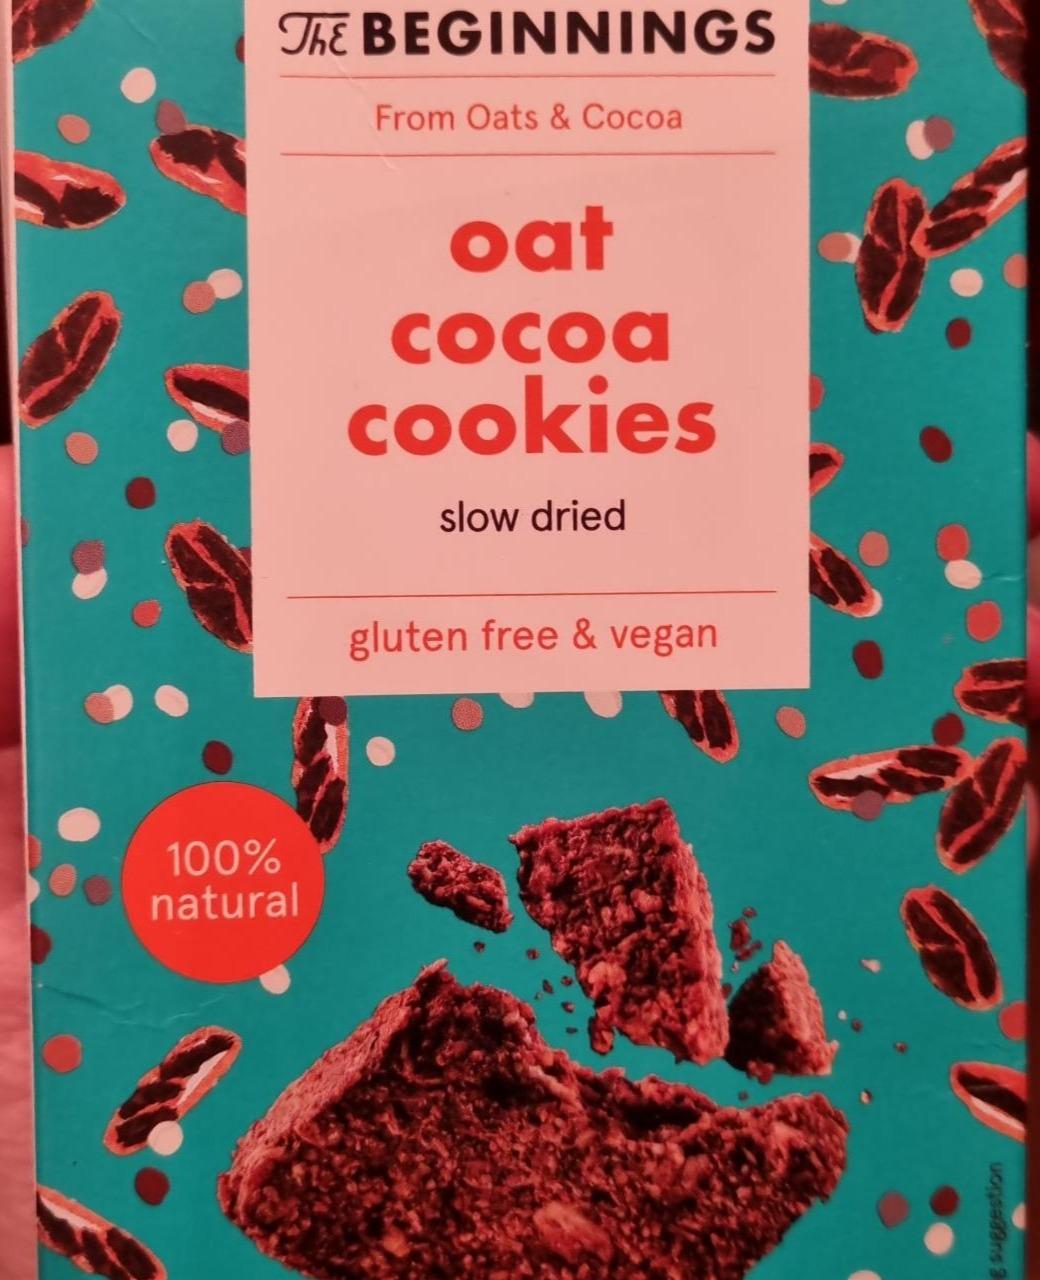 Fotografie - Oat cocoa cookies gluten free & vegan The Beginnings